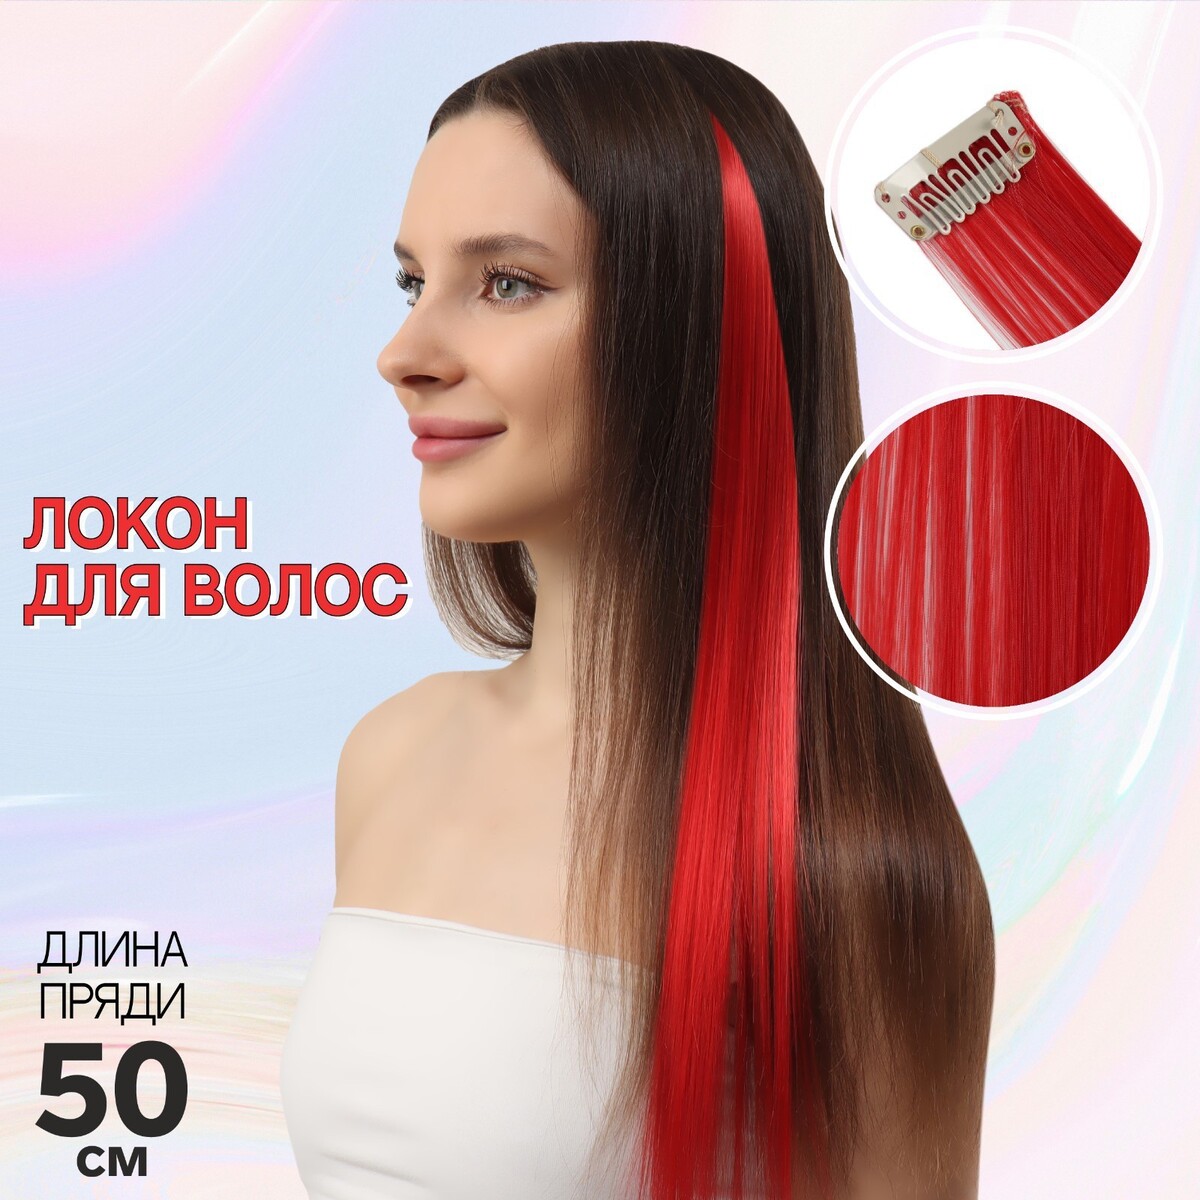 Локон накладной, прямой волос, на заколке, 50 см, 5 гр, цвет красный локон накладной прямой волос на заколке 50 см 5 гр каштановый